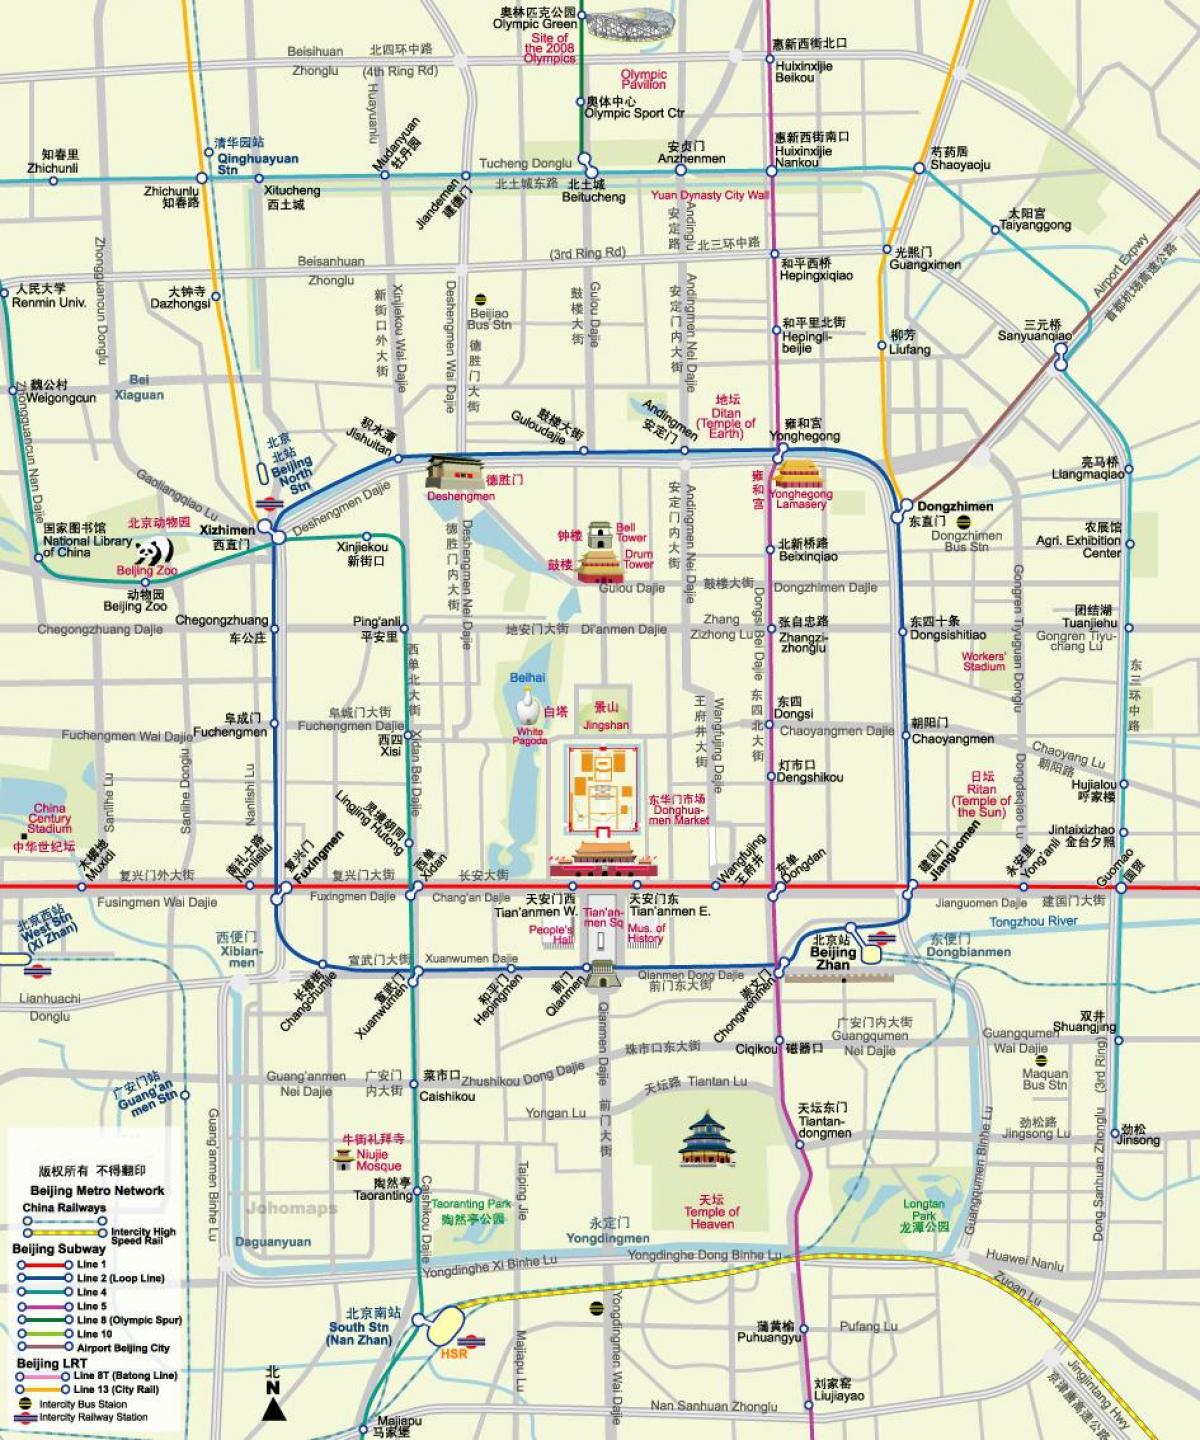 خريطة مترو انفاق بكين خريطة مع مناطق الجذب السياحي